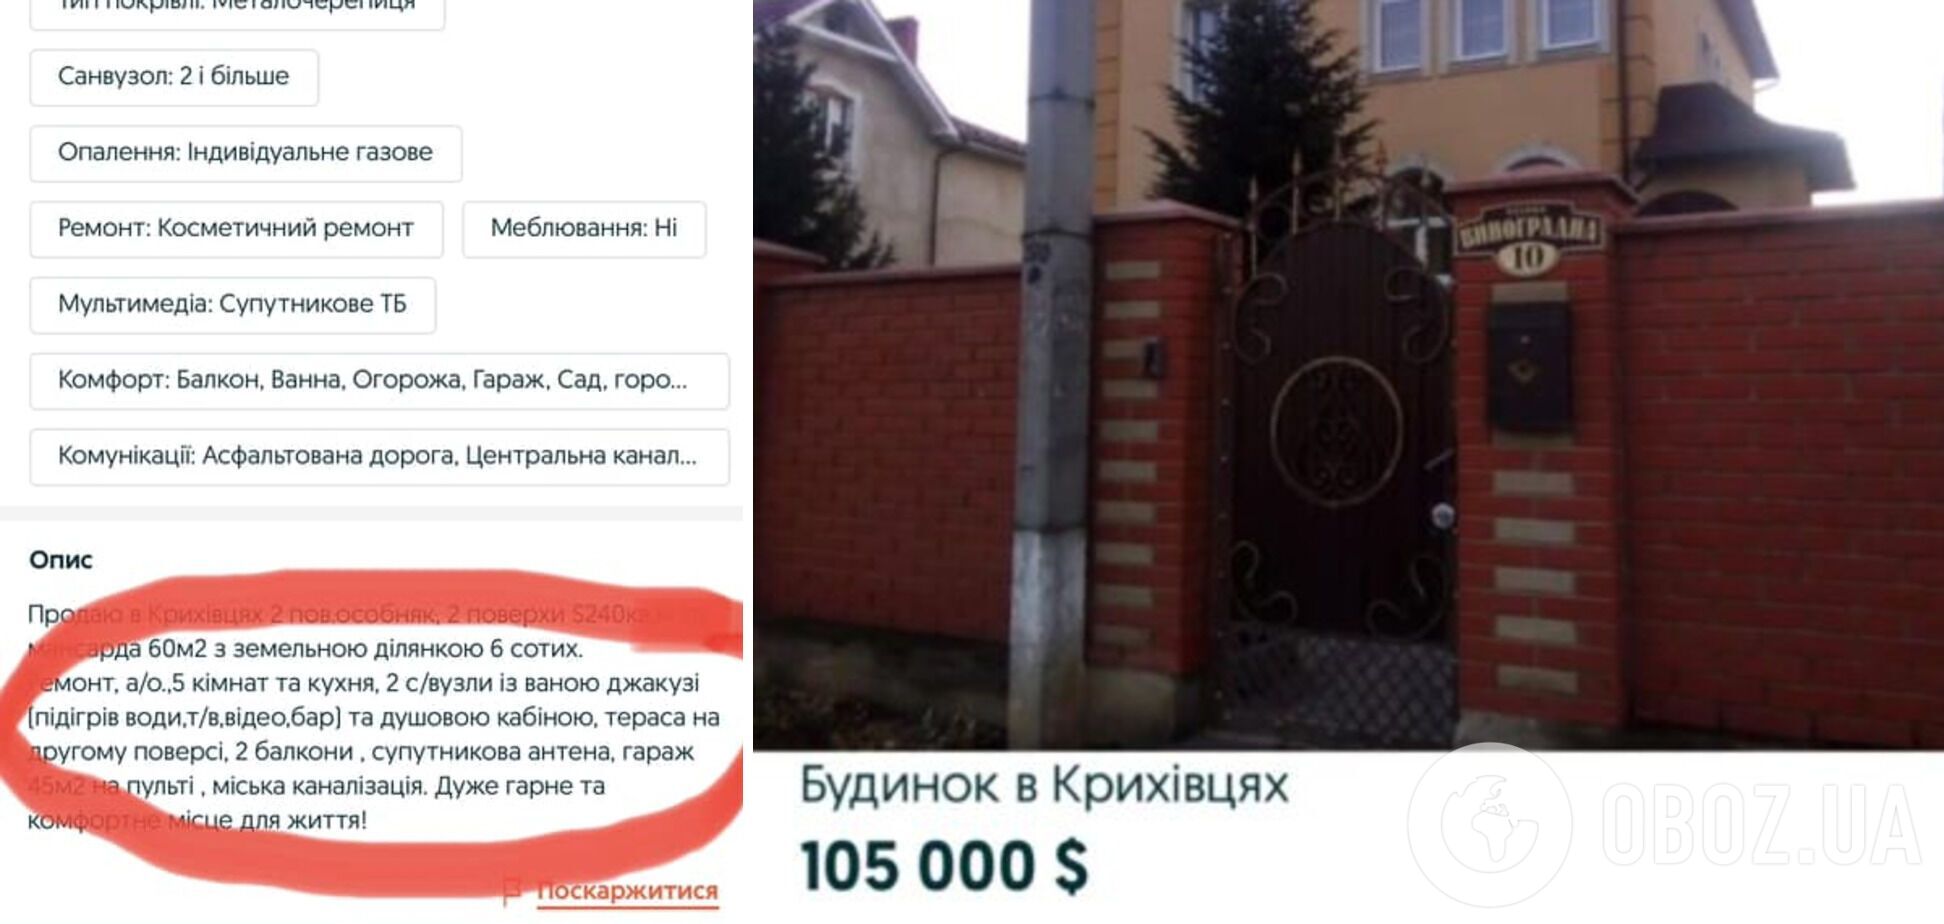 Два поверхи і санвузли з джакузі: УПЦ МП виставила на продаж свою резиденцію на Прикарпатті. Фото 